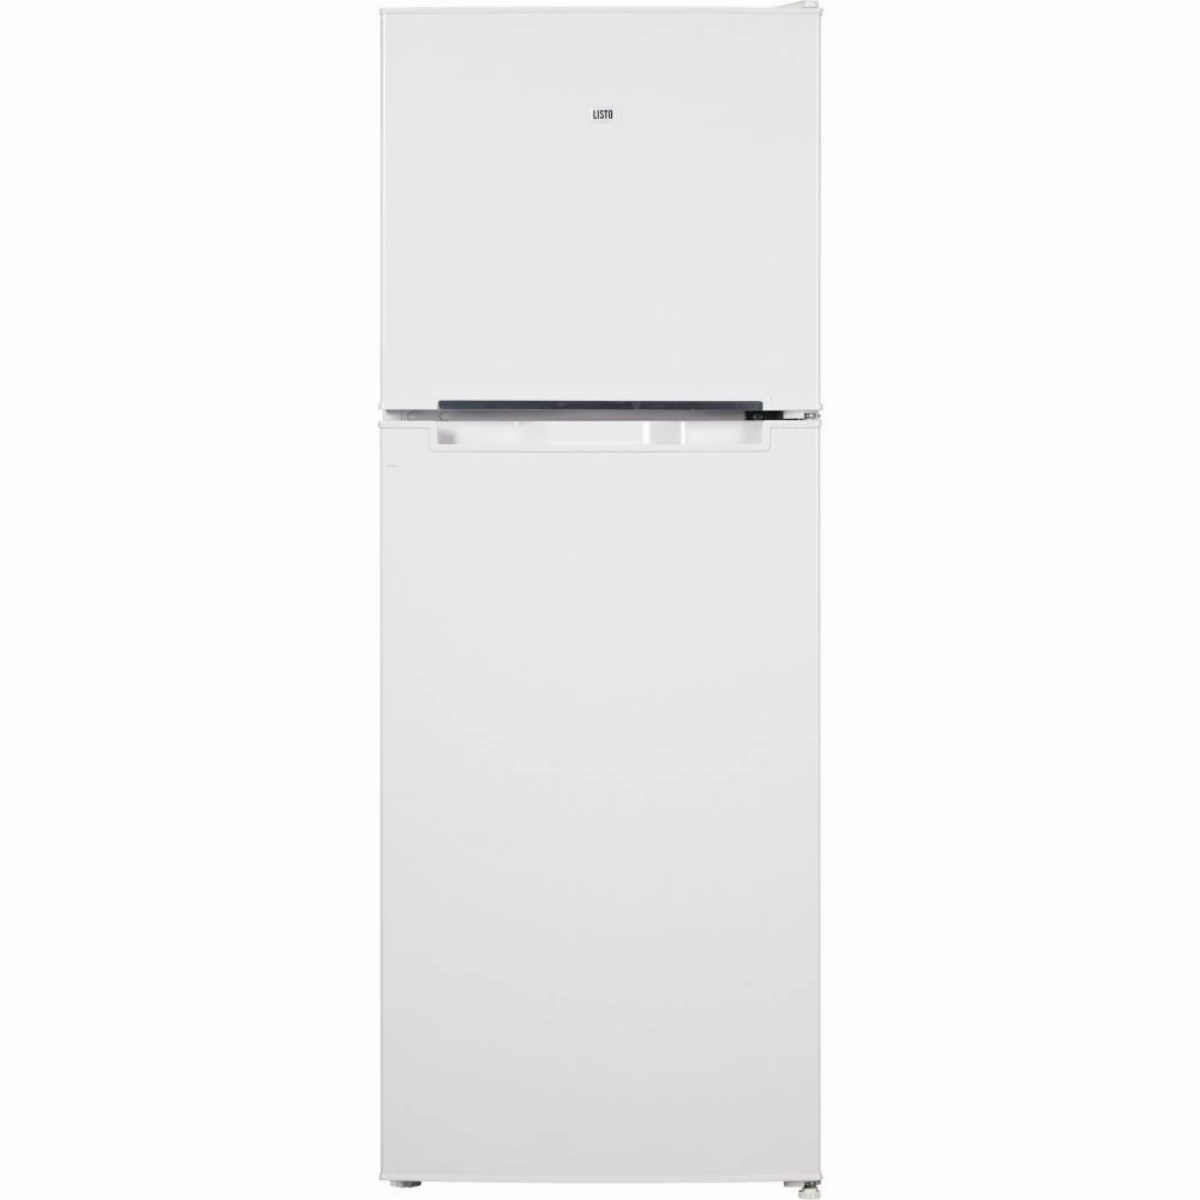 Raccord robinet, universal réfrigérateur & congélateur (style américain) -  3/4